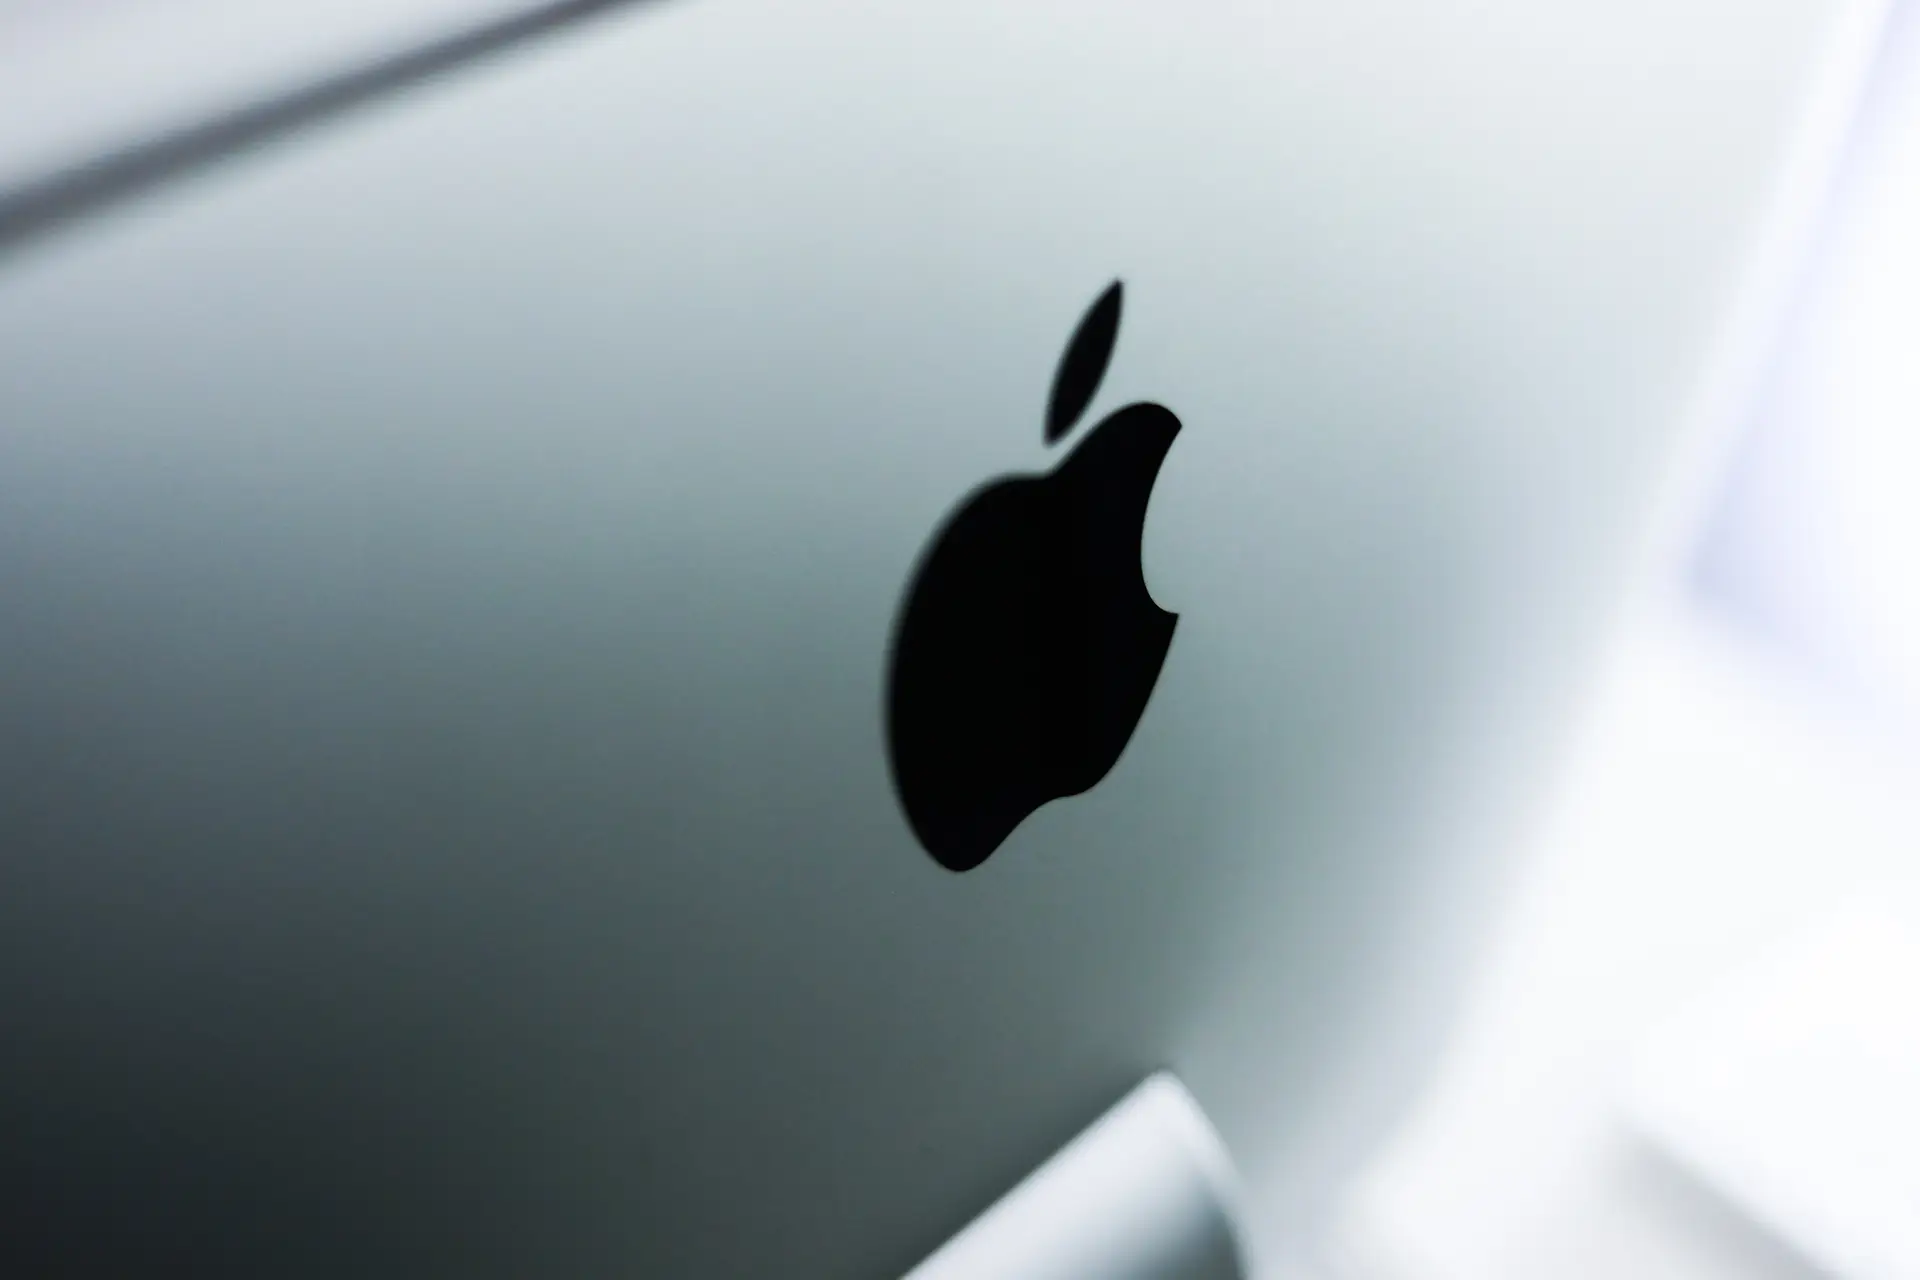 Funcionárias da Apple criticam gestão de queixas de assédio pelo grupo